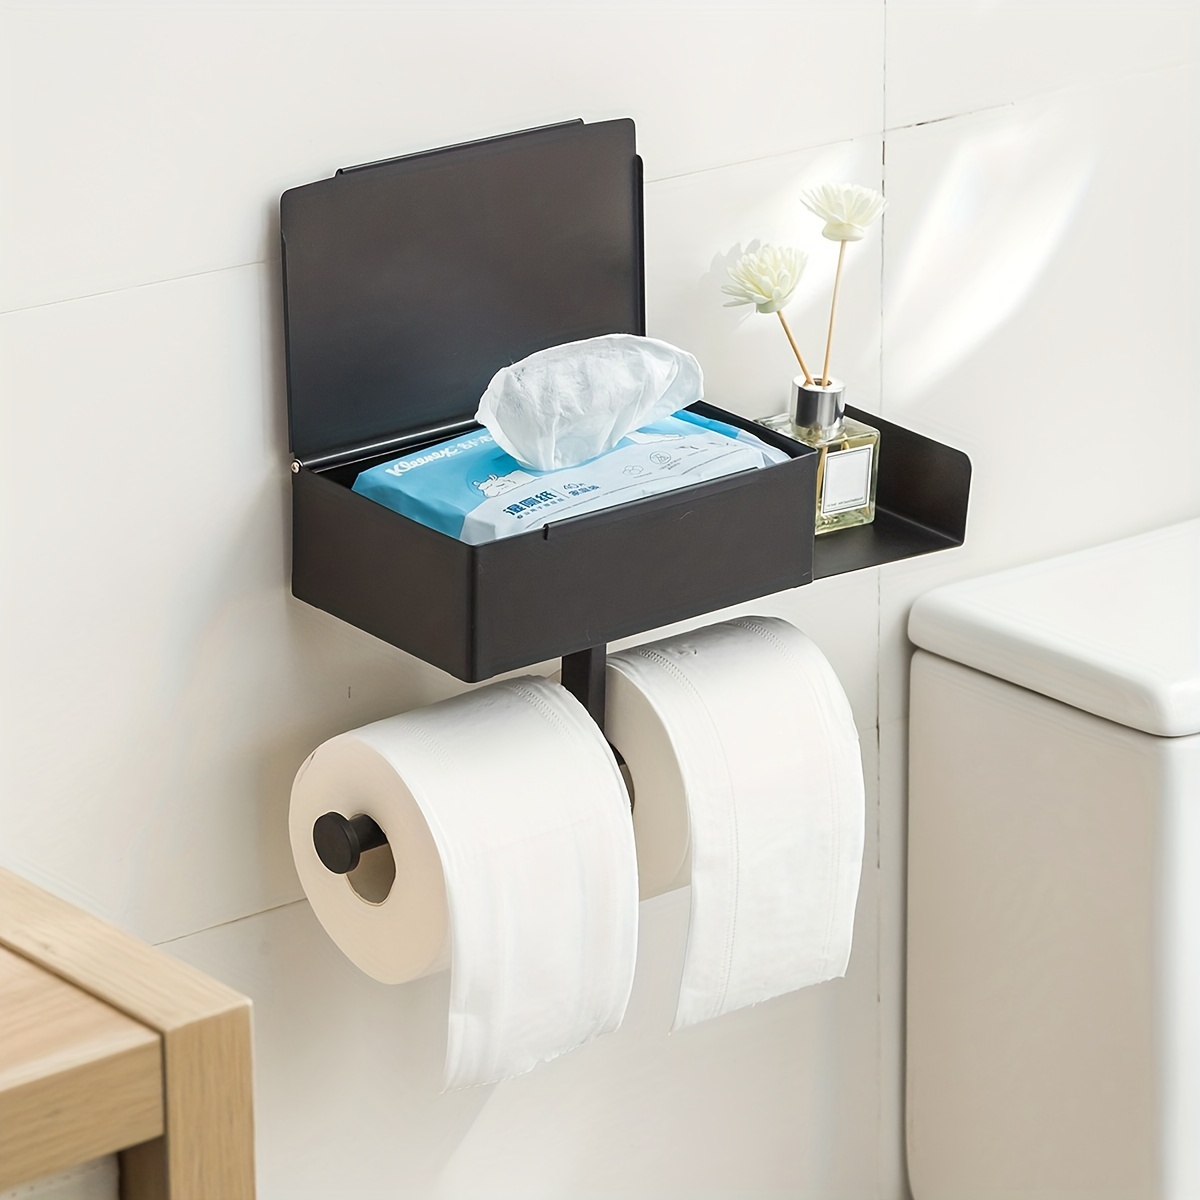  Dijianong Soporte de papel higiénico montado en la pared,  estante de papel higiénico de plástico, bandeja de papel higiénico para  toallas de baño, organizador de baño (color: azul) : Herramientas y